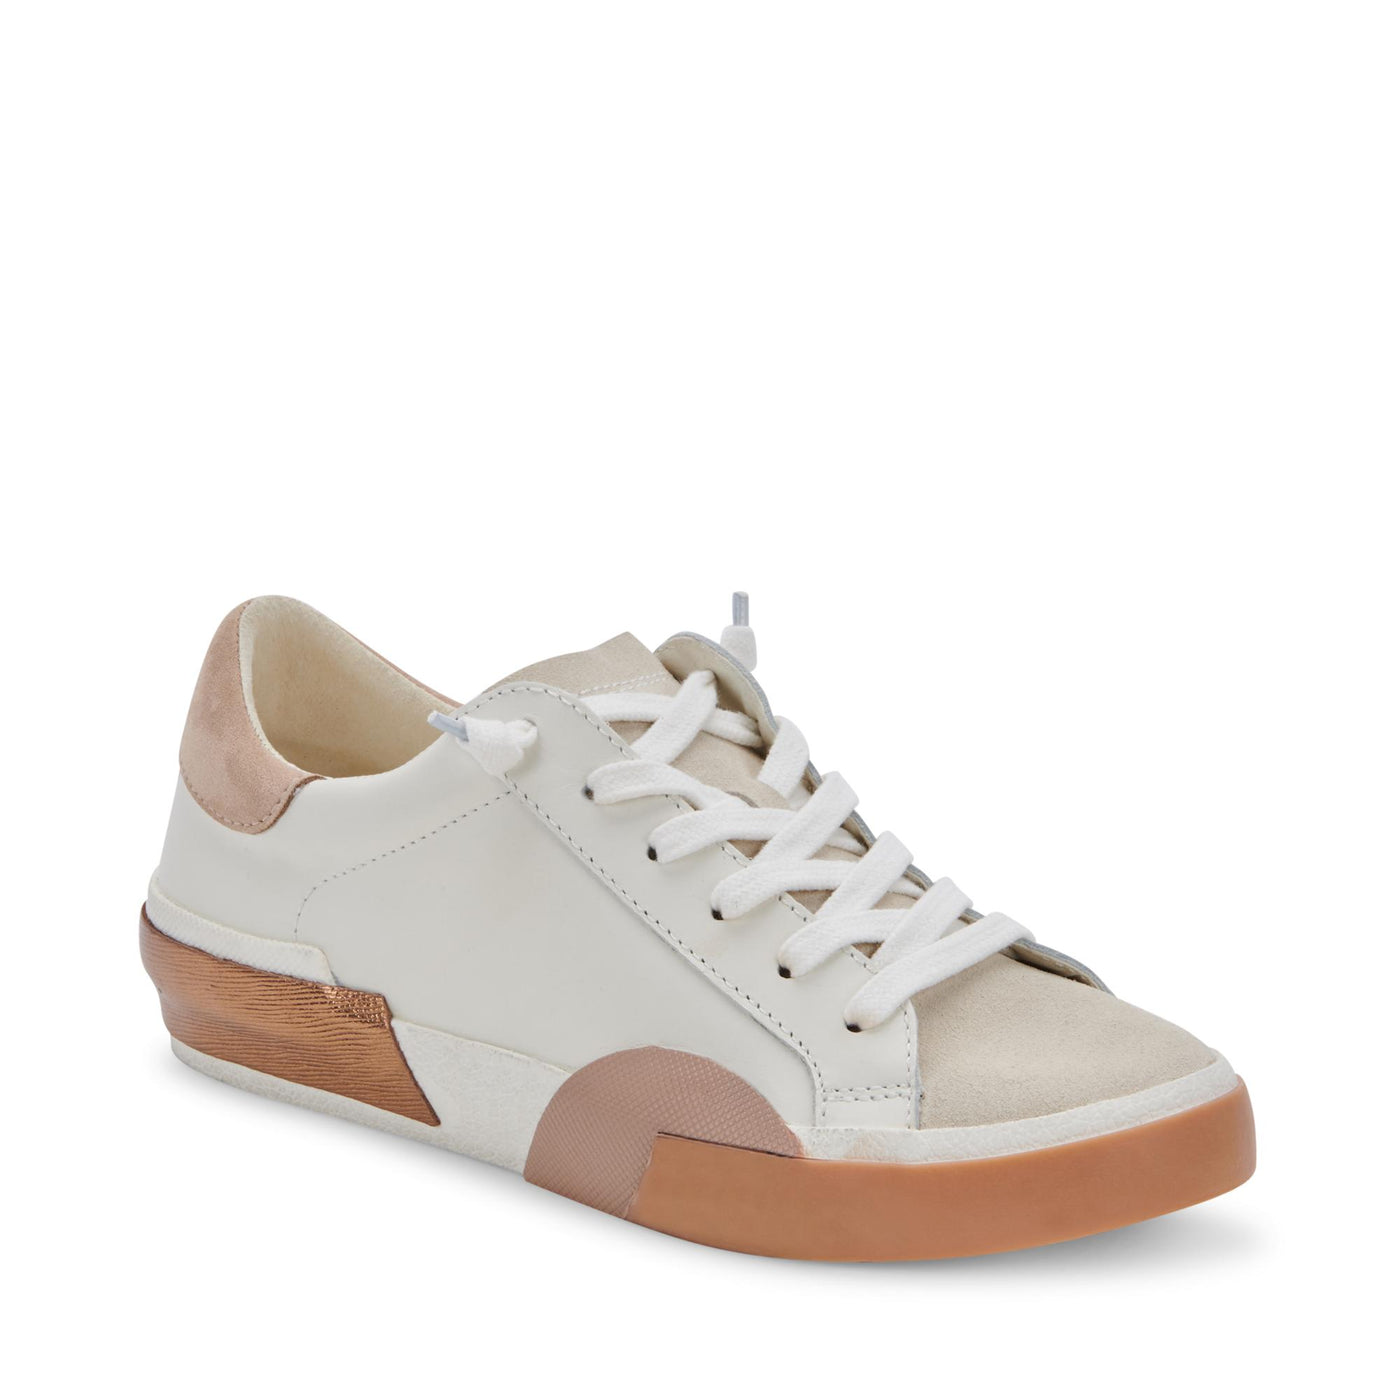 Zina Sneaker in White/Tan